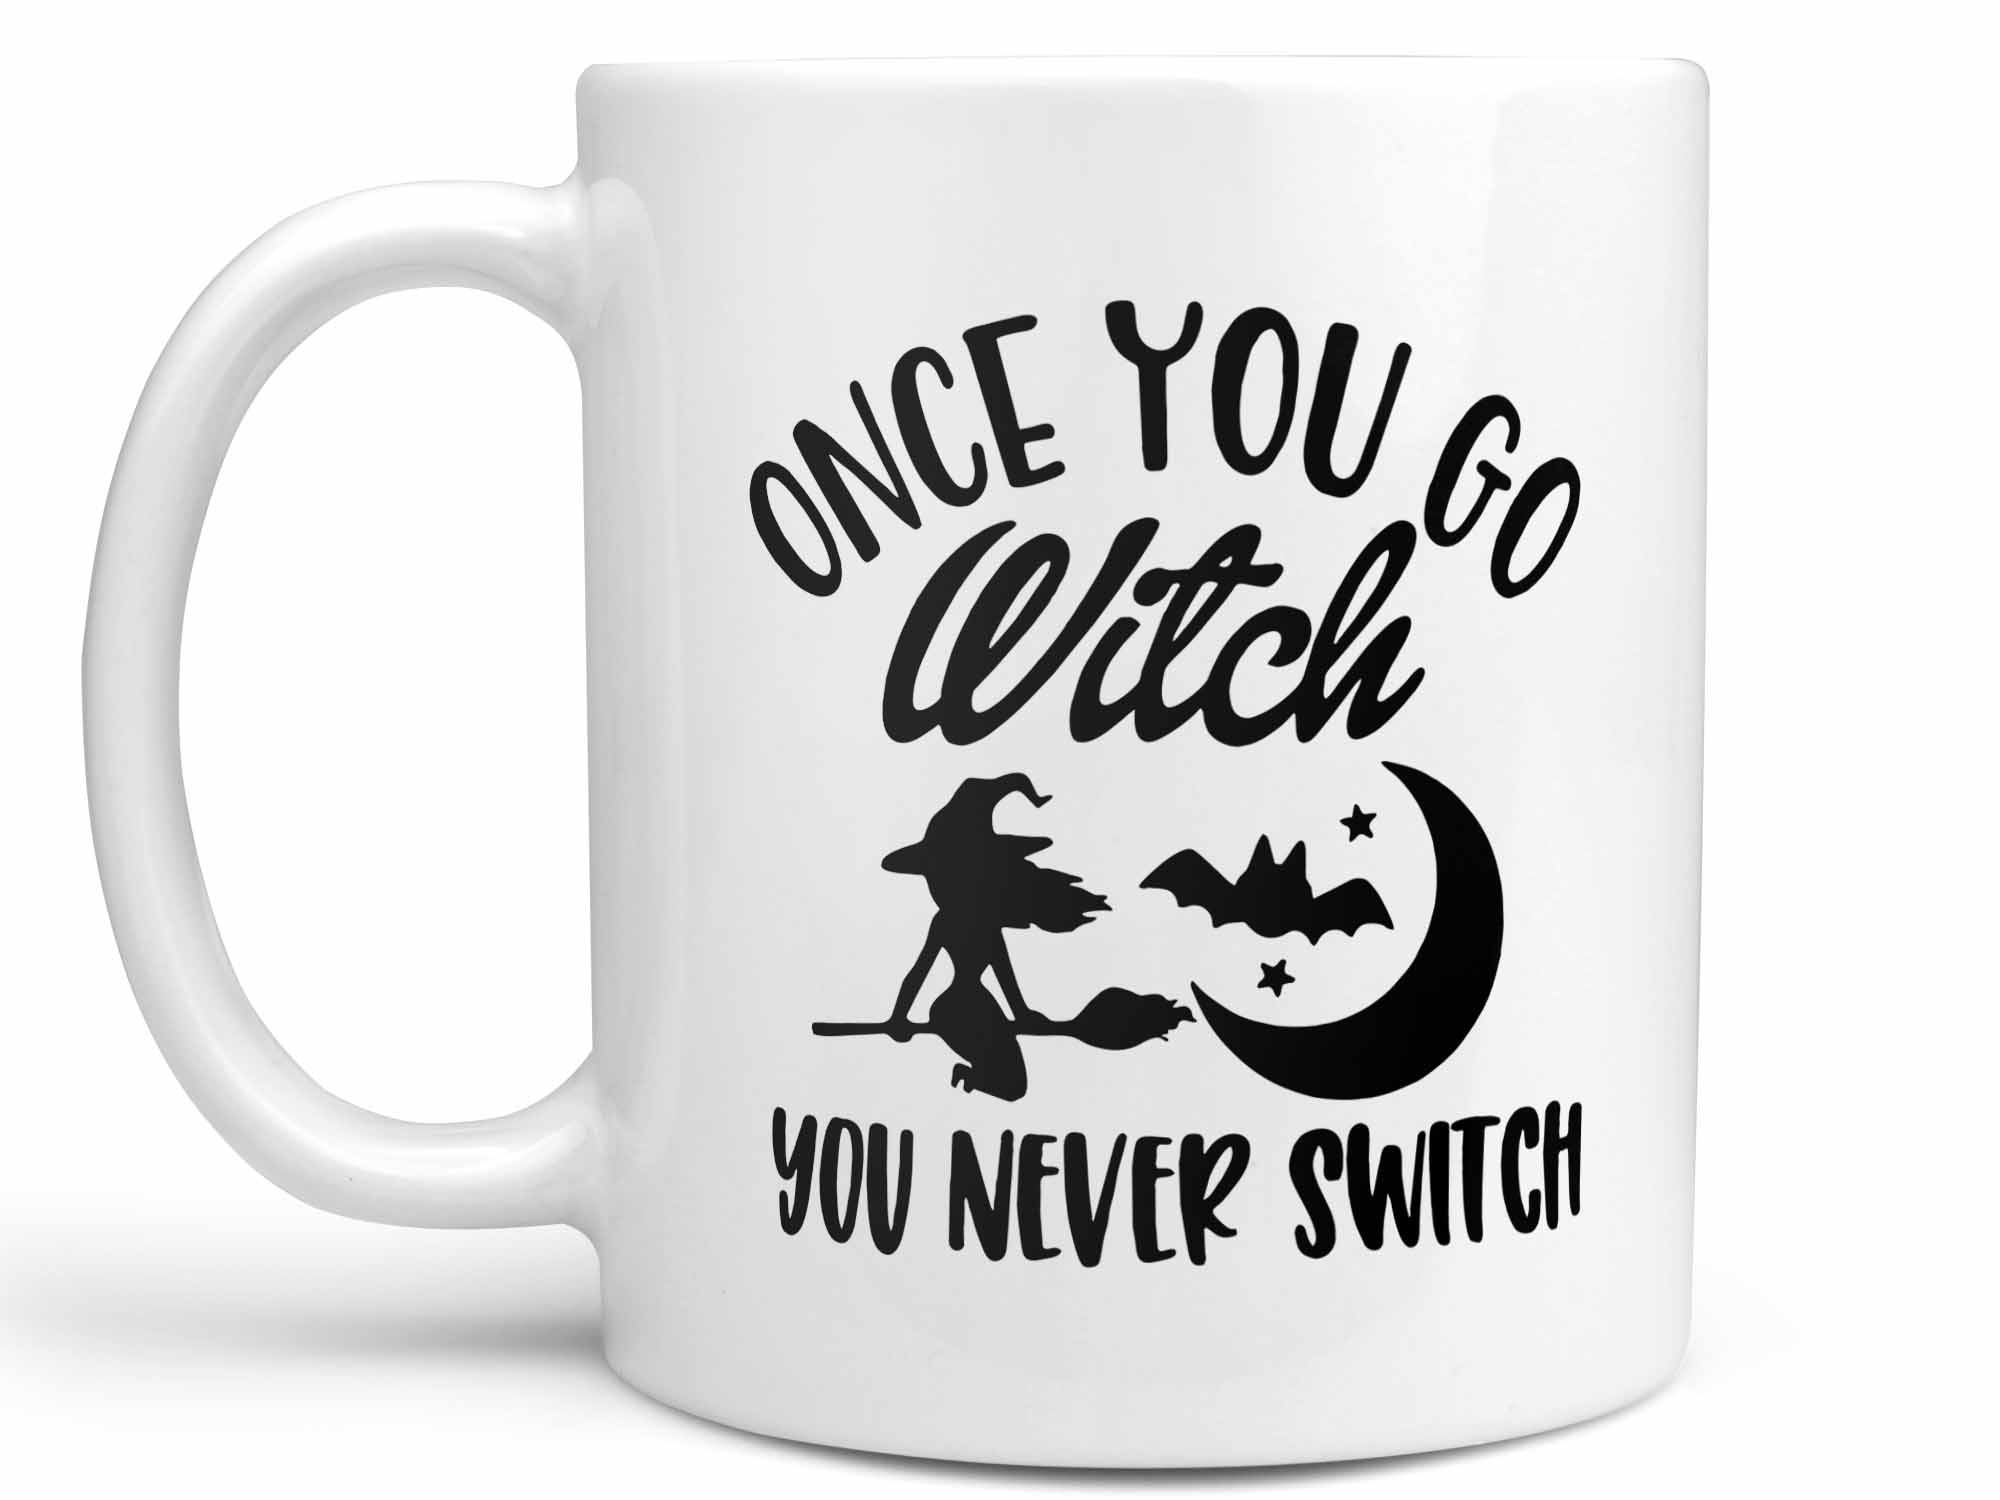 Once You Go Witch Coffee Mug